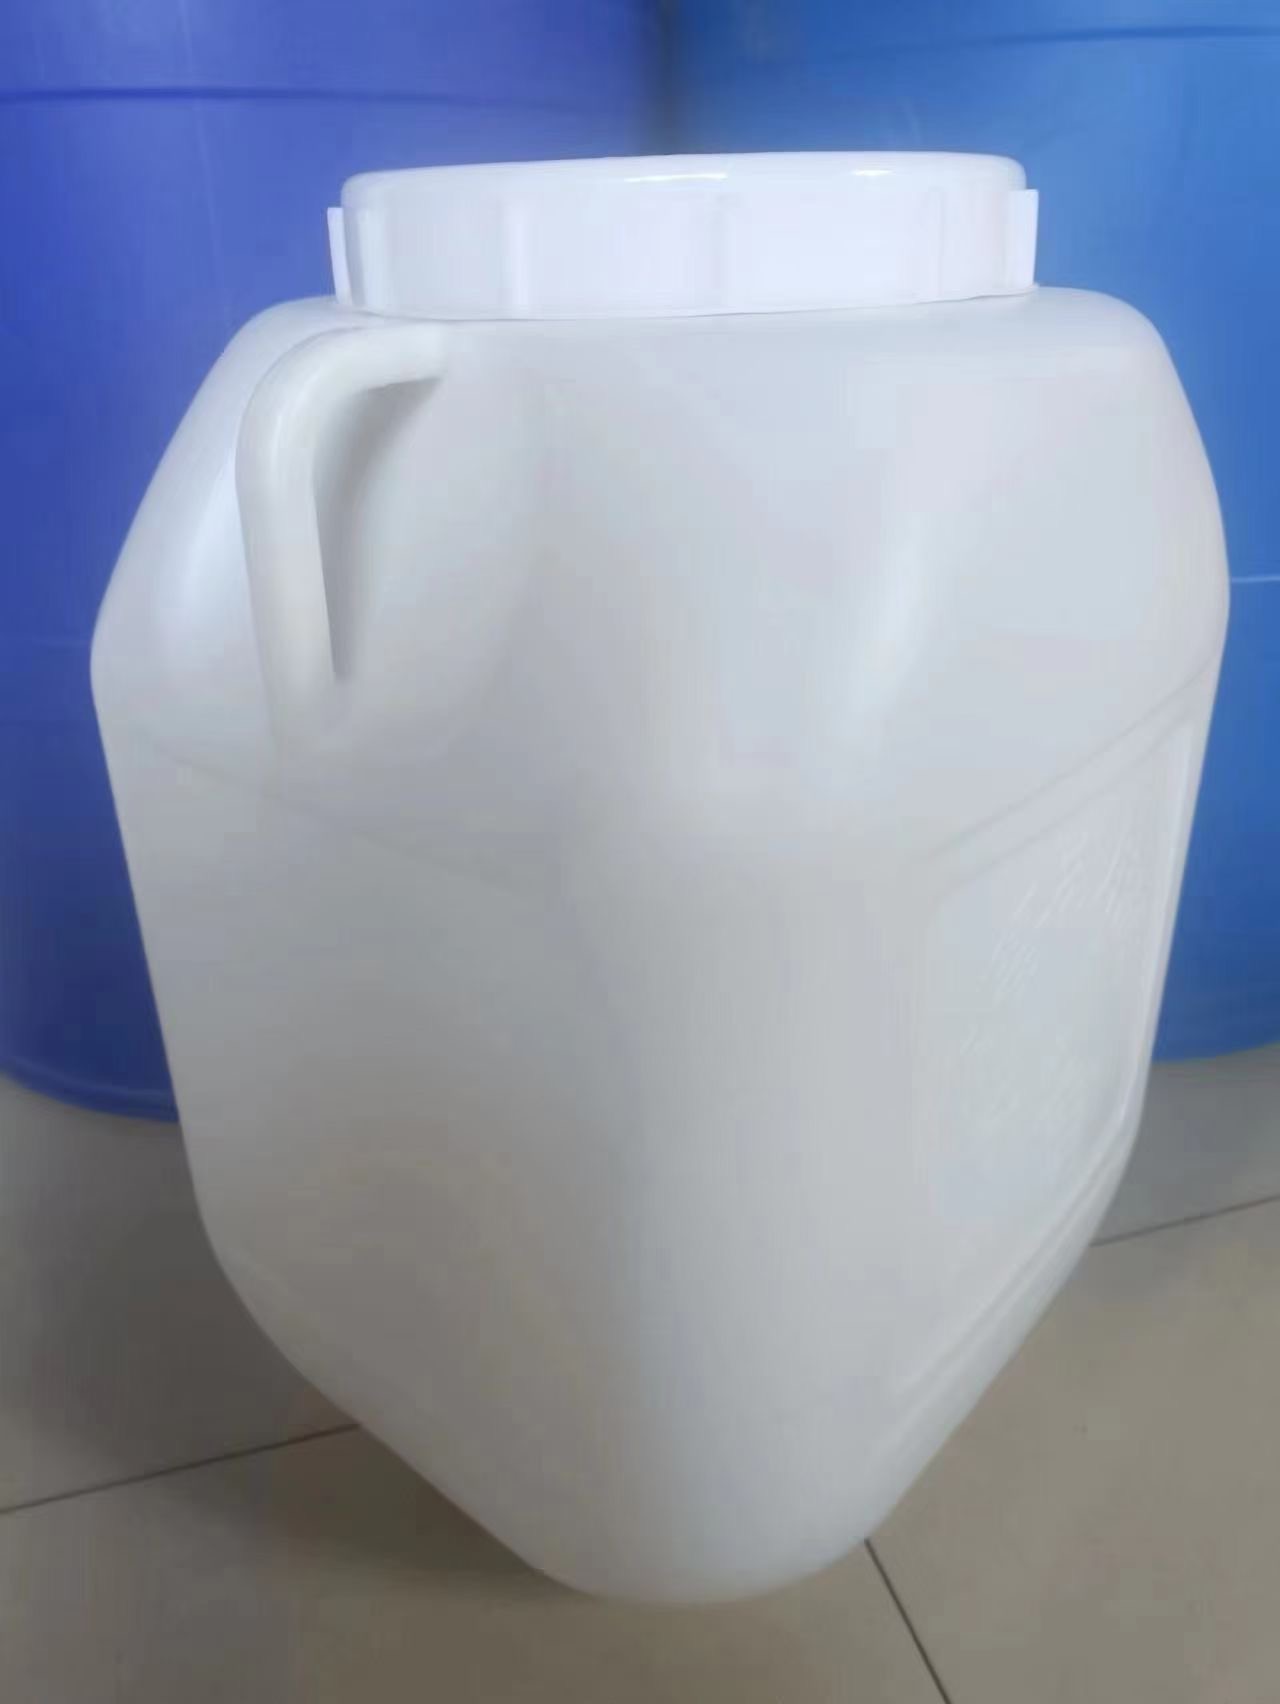 塑料桶是如何正确灌装的?